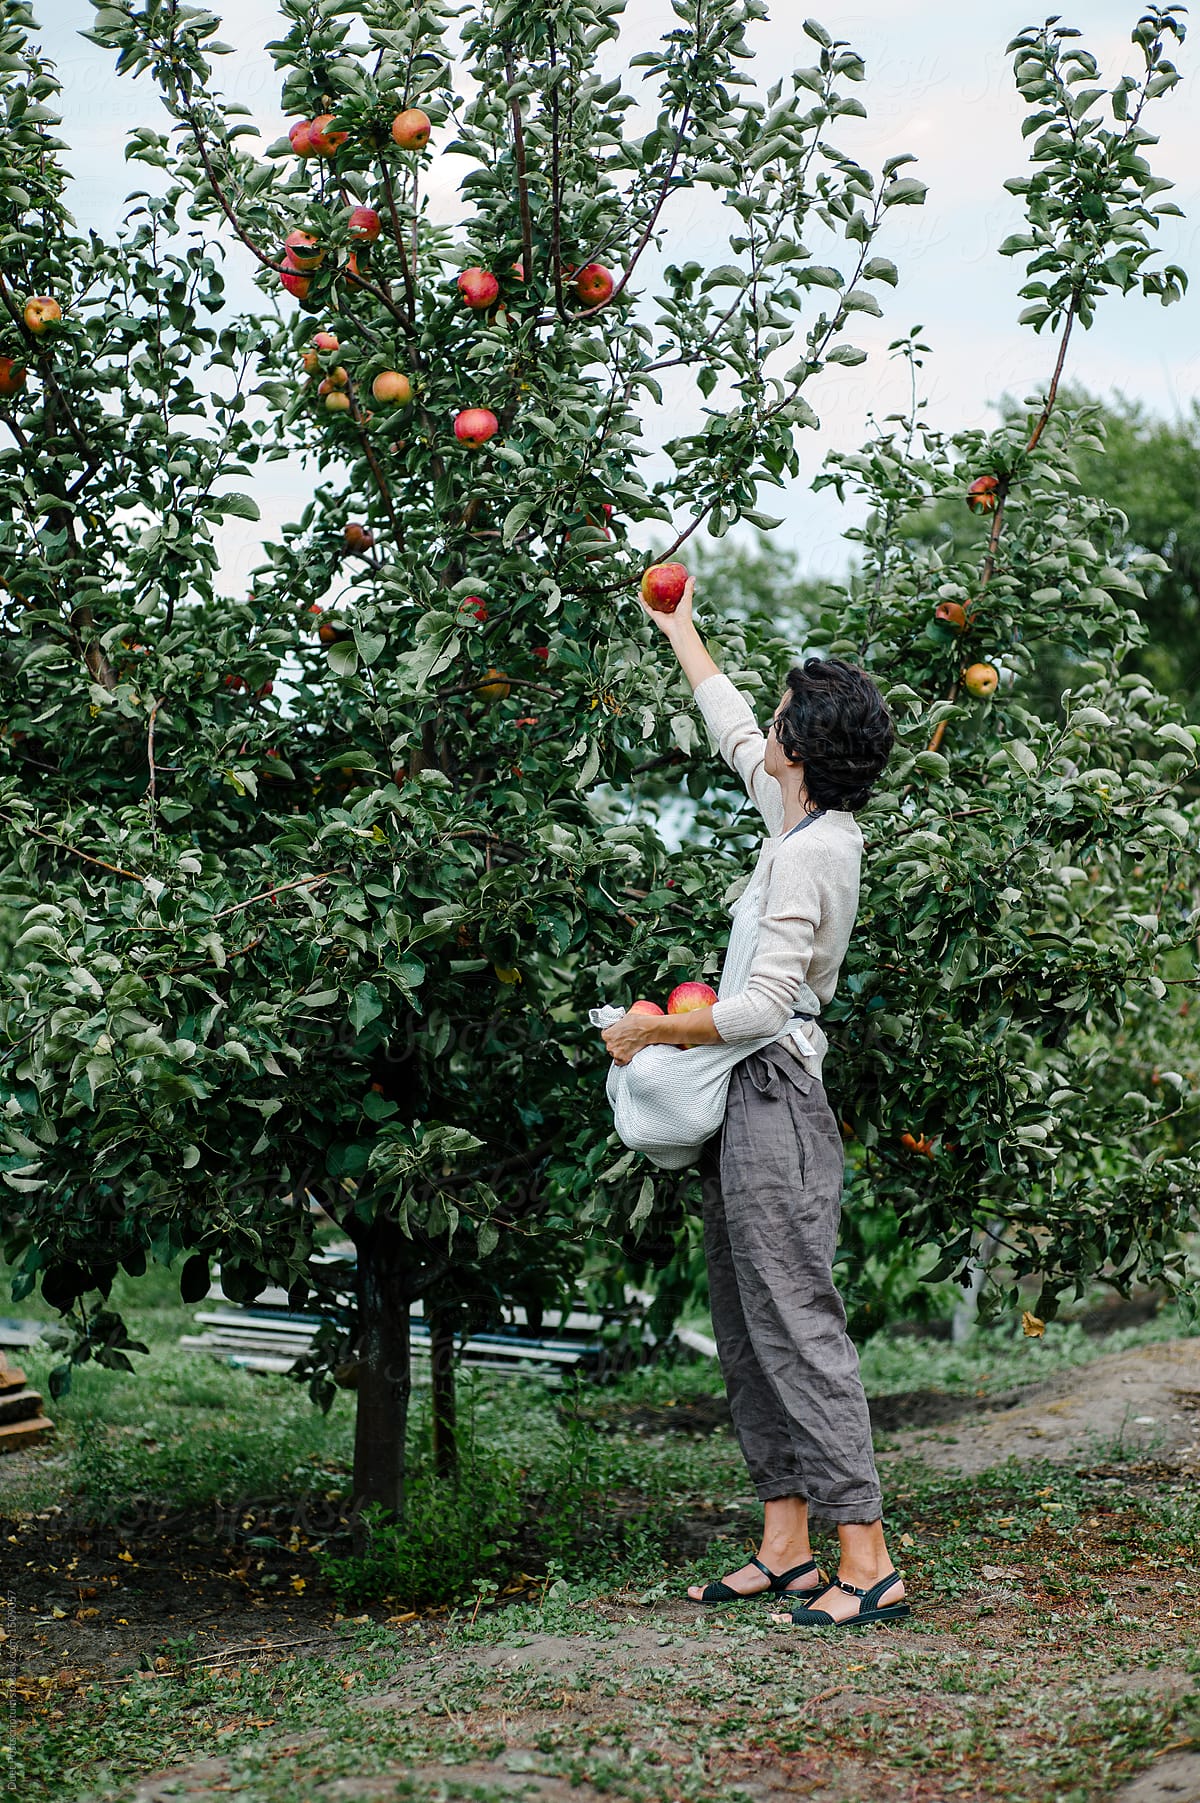 Woman Picking Apples In Garden Del Colaborador De Stocksy Duet Postscriptum Stocksy 4711